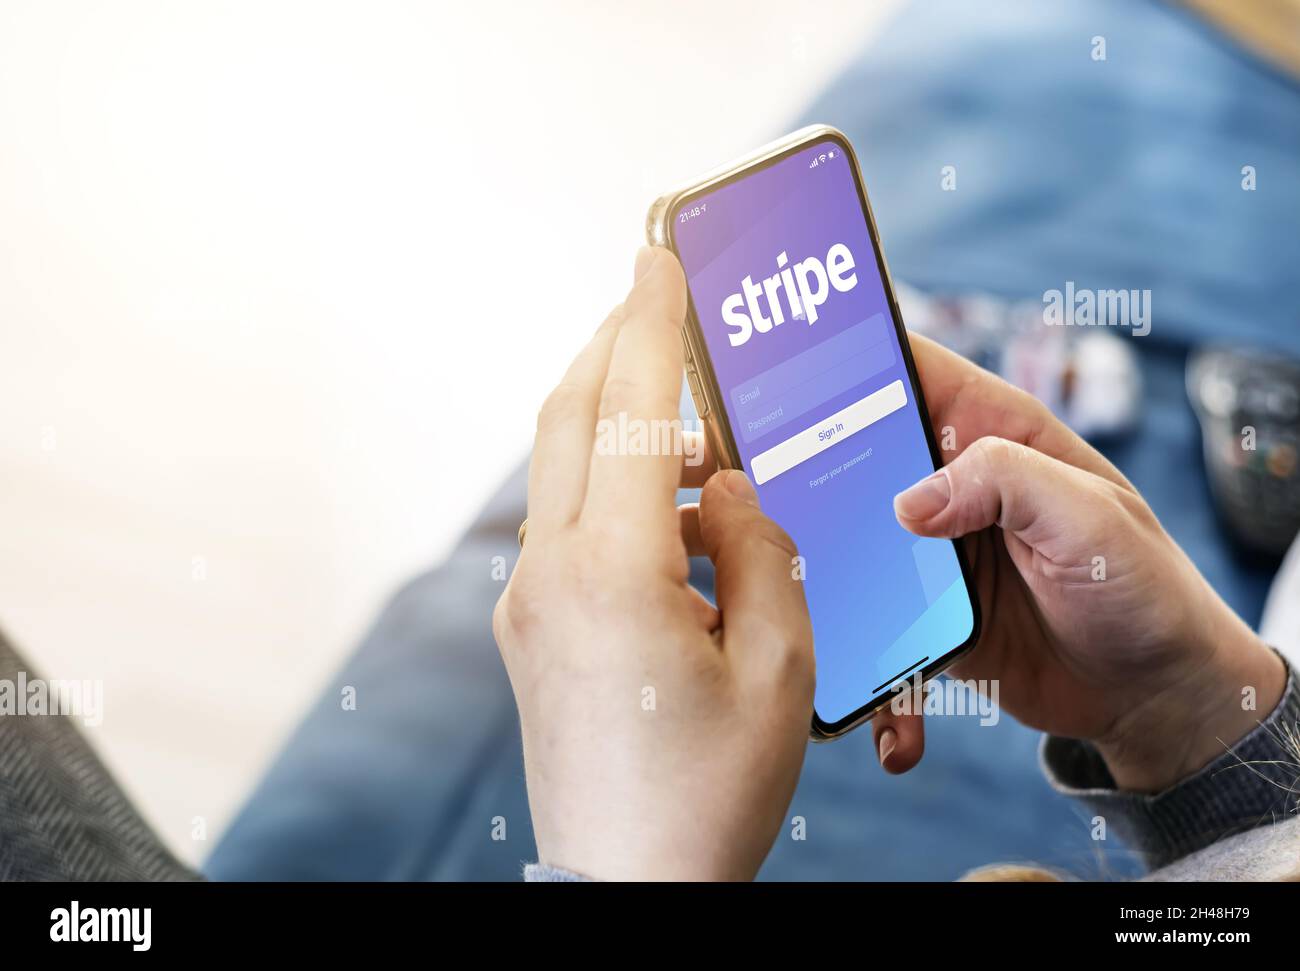 San Francisco, CA, Etats-Unis, 15 mars 2021: Femme tenant un smartphone avec application Stripe à l'écran.Stripe est une société américaine de services financiers.B Banque D'Images